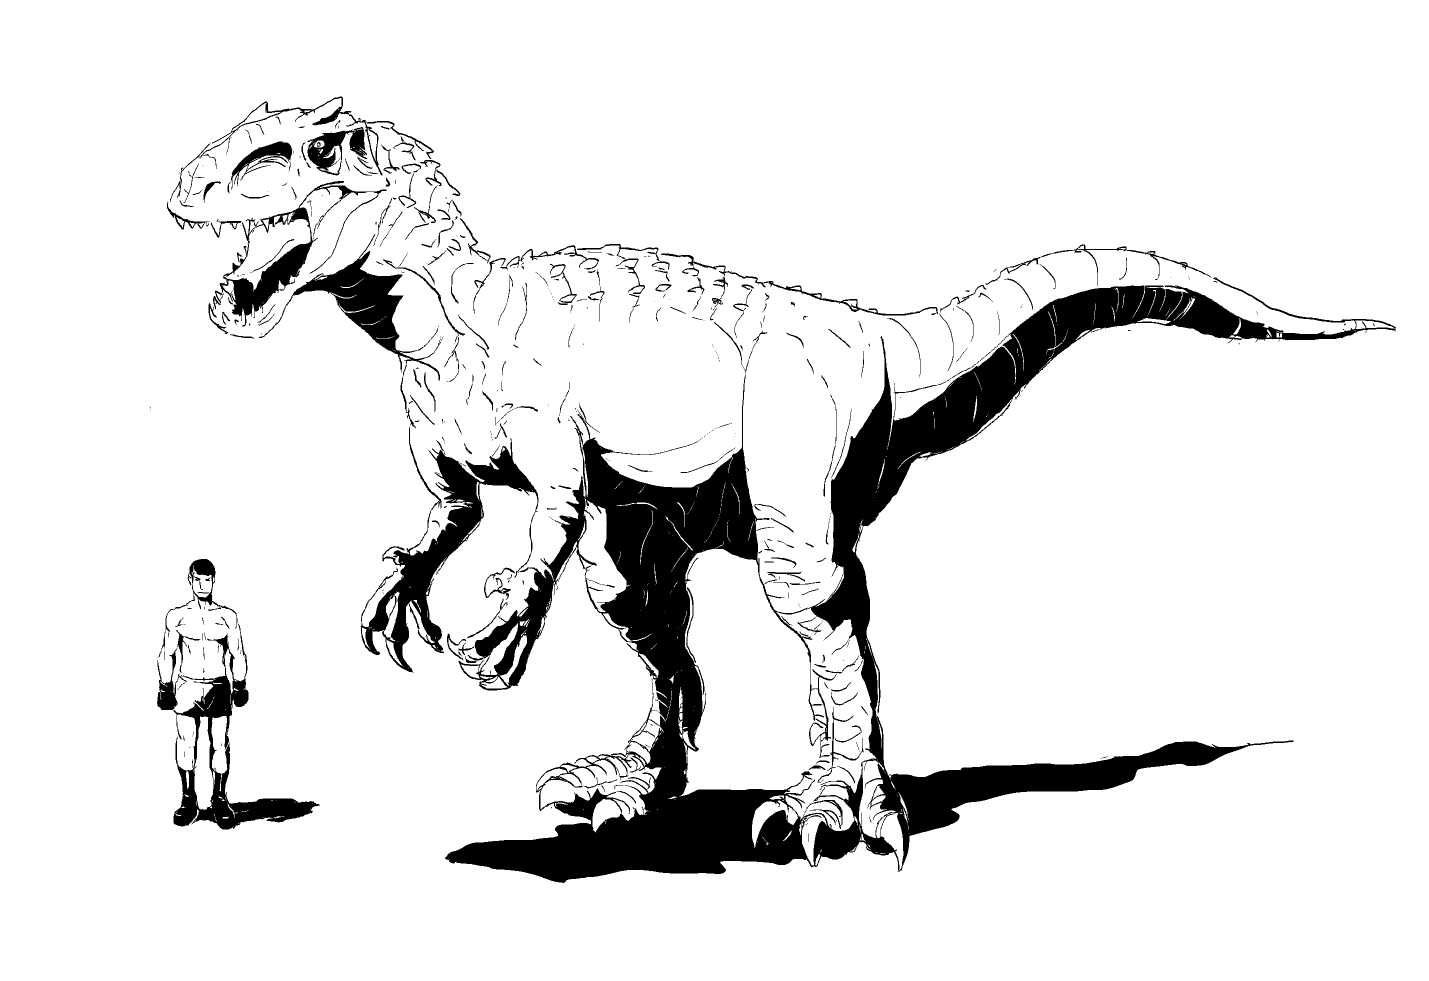 有一部分甚至只是有恐龙的名字却不像恐龙 帝王暴龙indominus rex